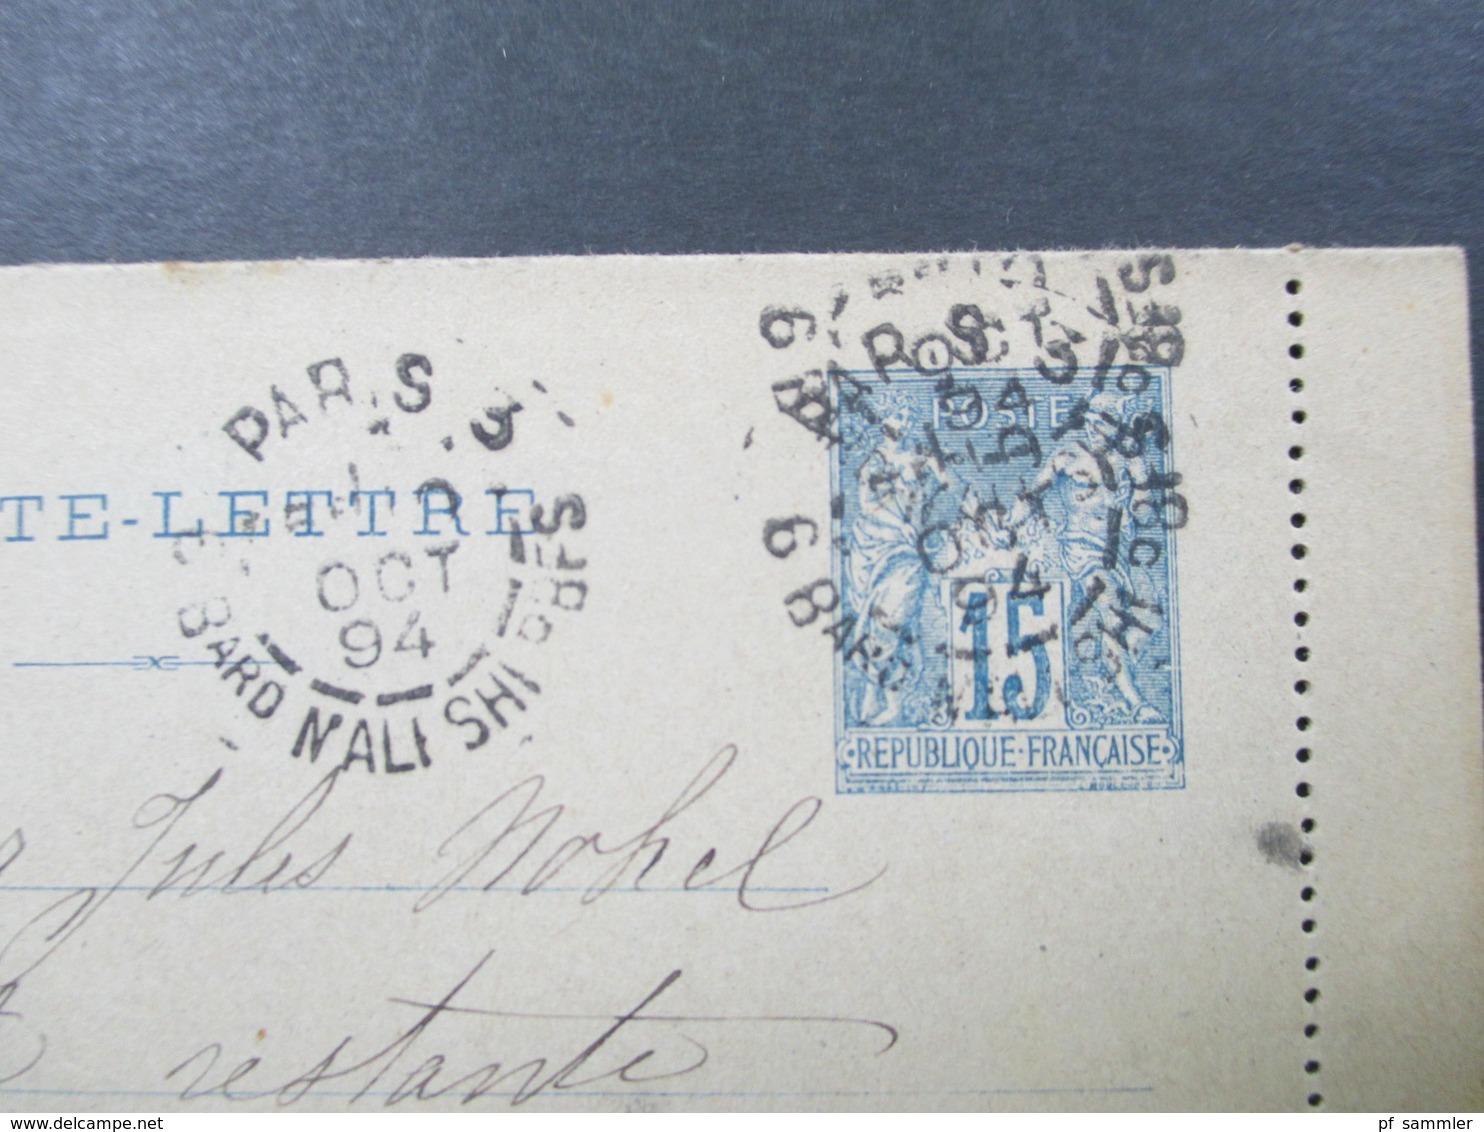 Frankreich 1894 Kartenbrief Poste Restante Ship Letter ?! Nach Tunis - Cartes-lettres